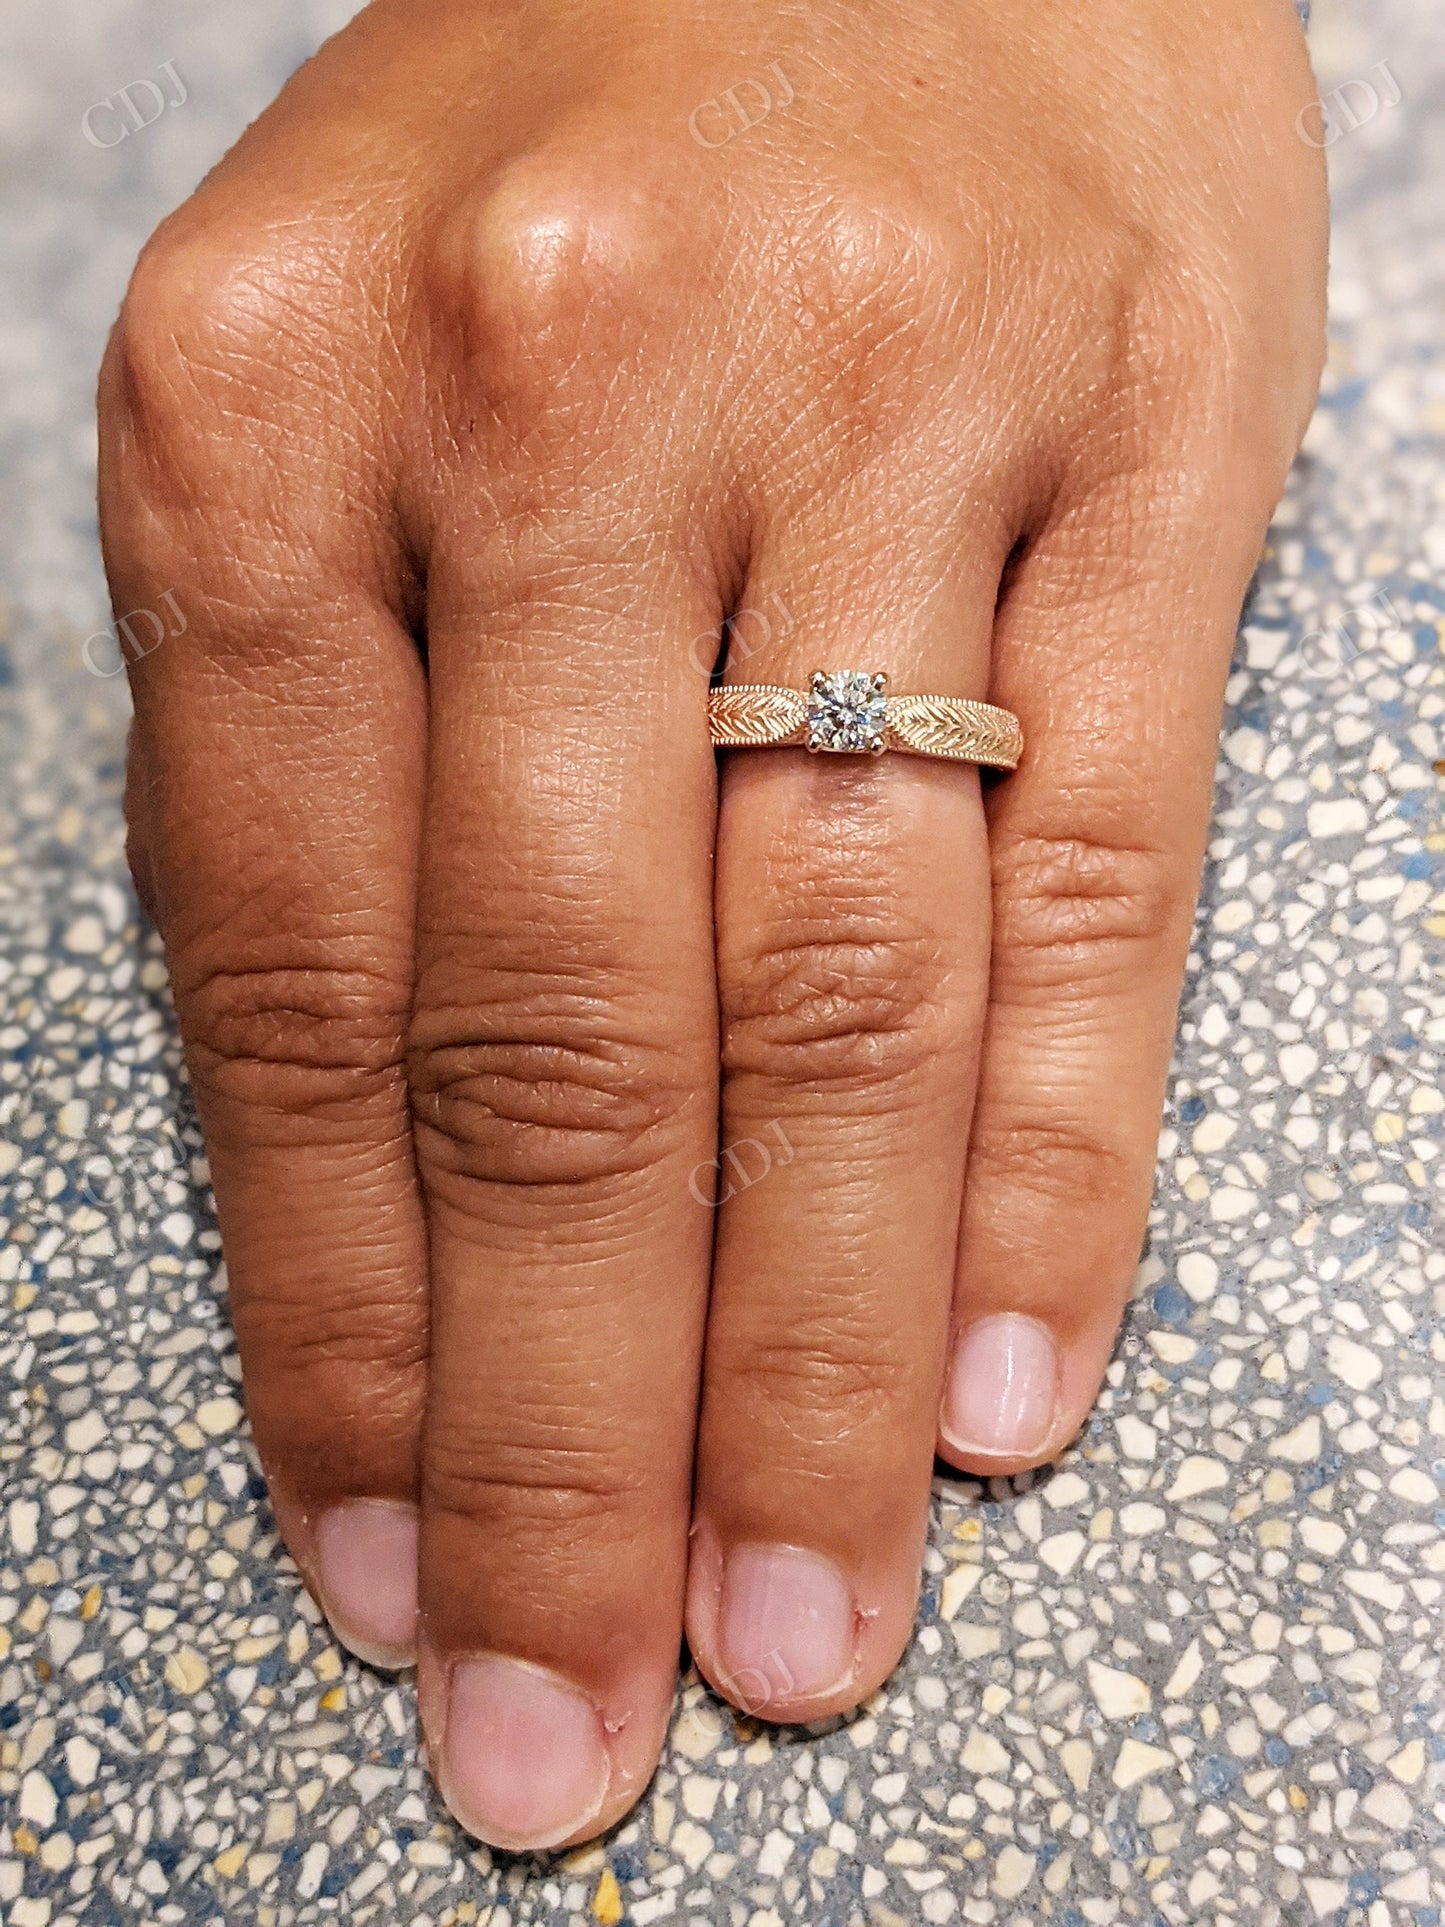 Brilliant Cut Diamond vintage Solitaire Engagement Ring